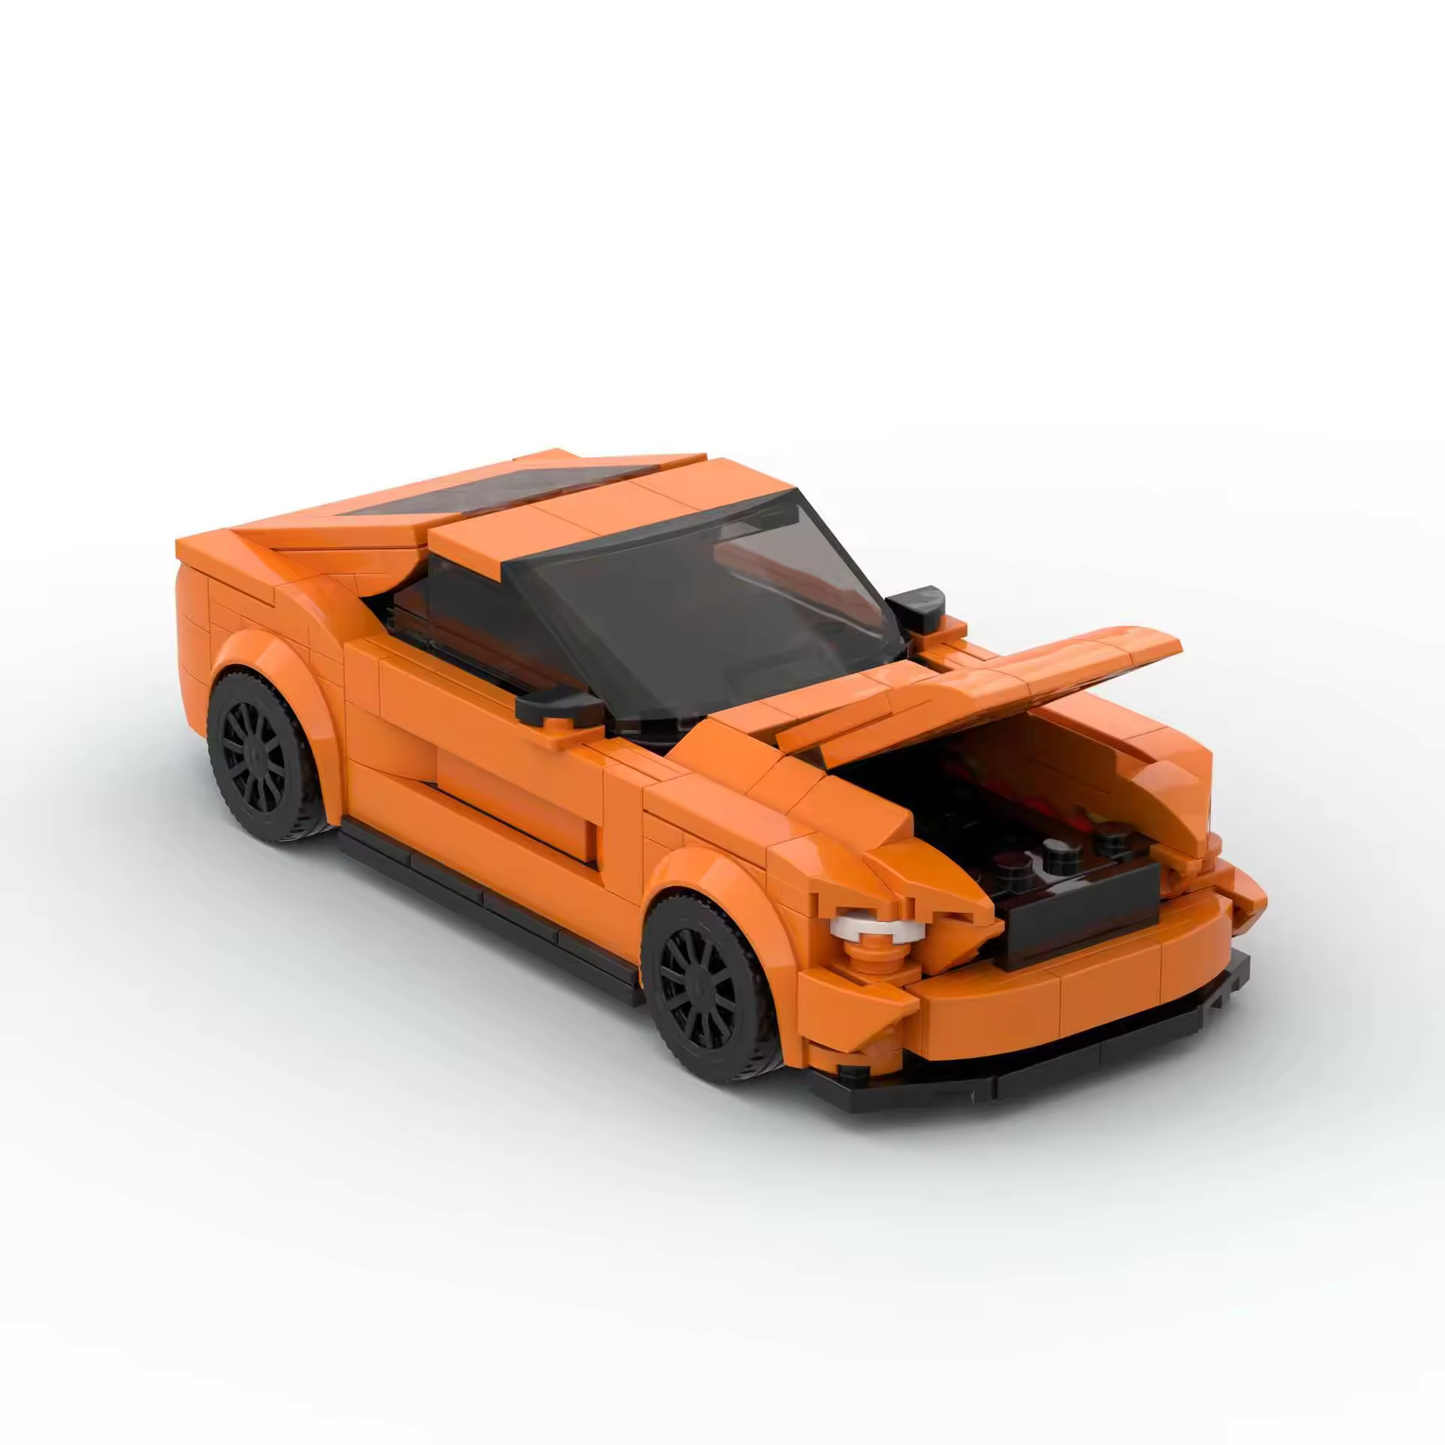 Ford Mustang Orange